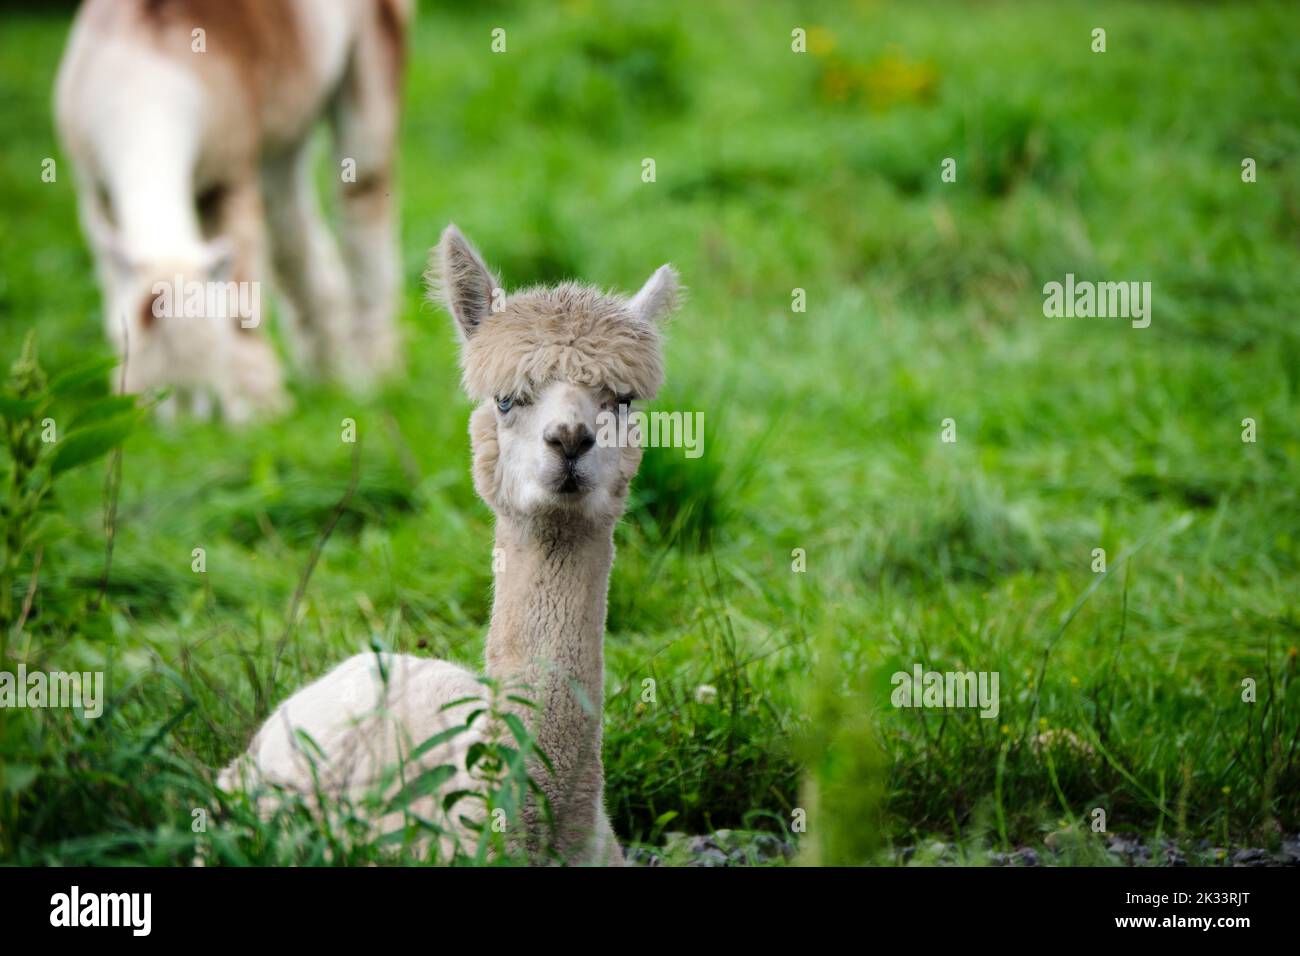 Un alpaca bianco è appoggiato a terra con la testa in posizione eretta, guardando verso lo spettatore. L'erba circonda l'animale, con un'altra alpaca dietro di esso. Foto Stock